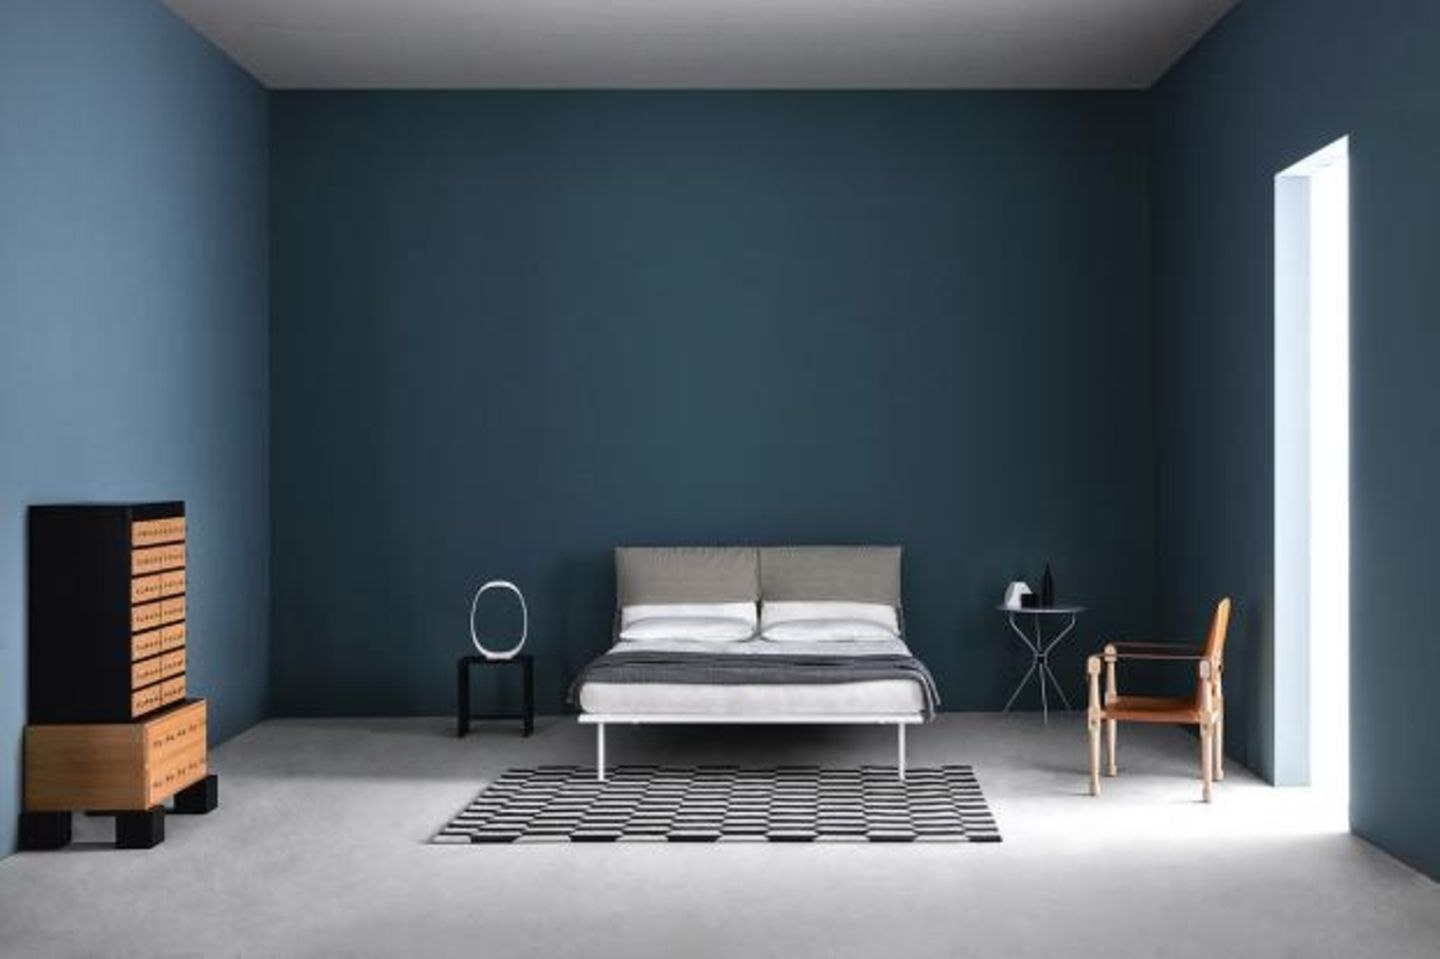 Schlafzimmer Mit Dunkler Wandfarbe - [Schöner Wohnen] with Schlafzimmer Farben Dunkel